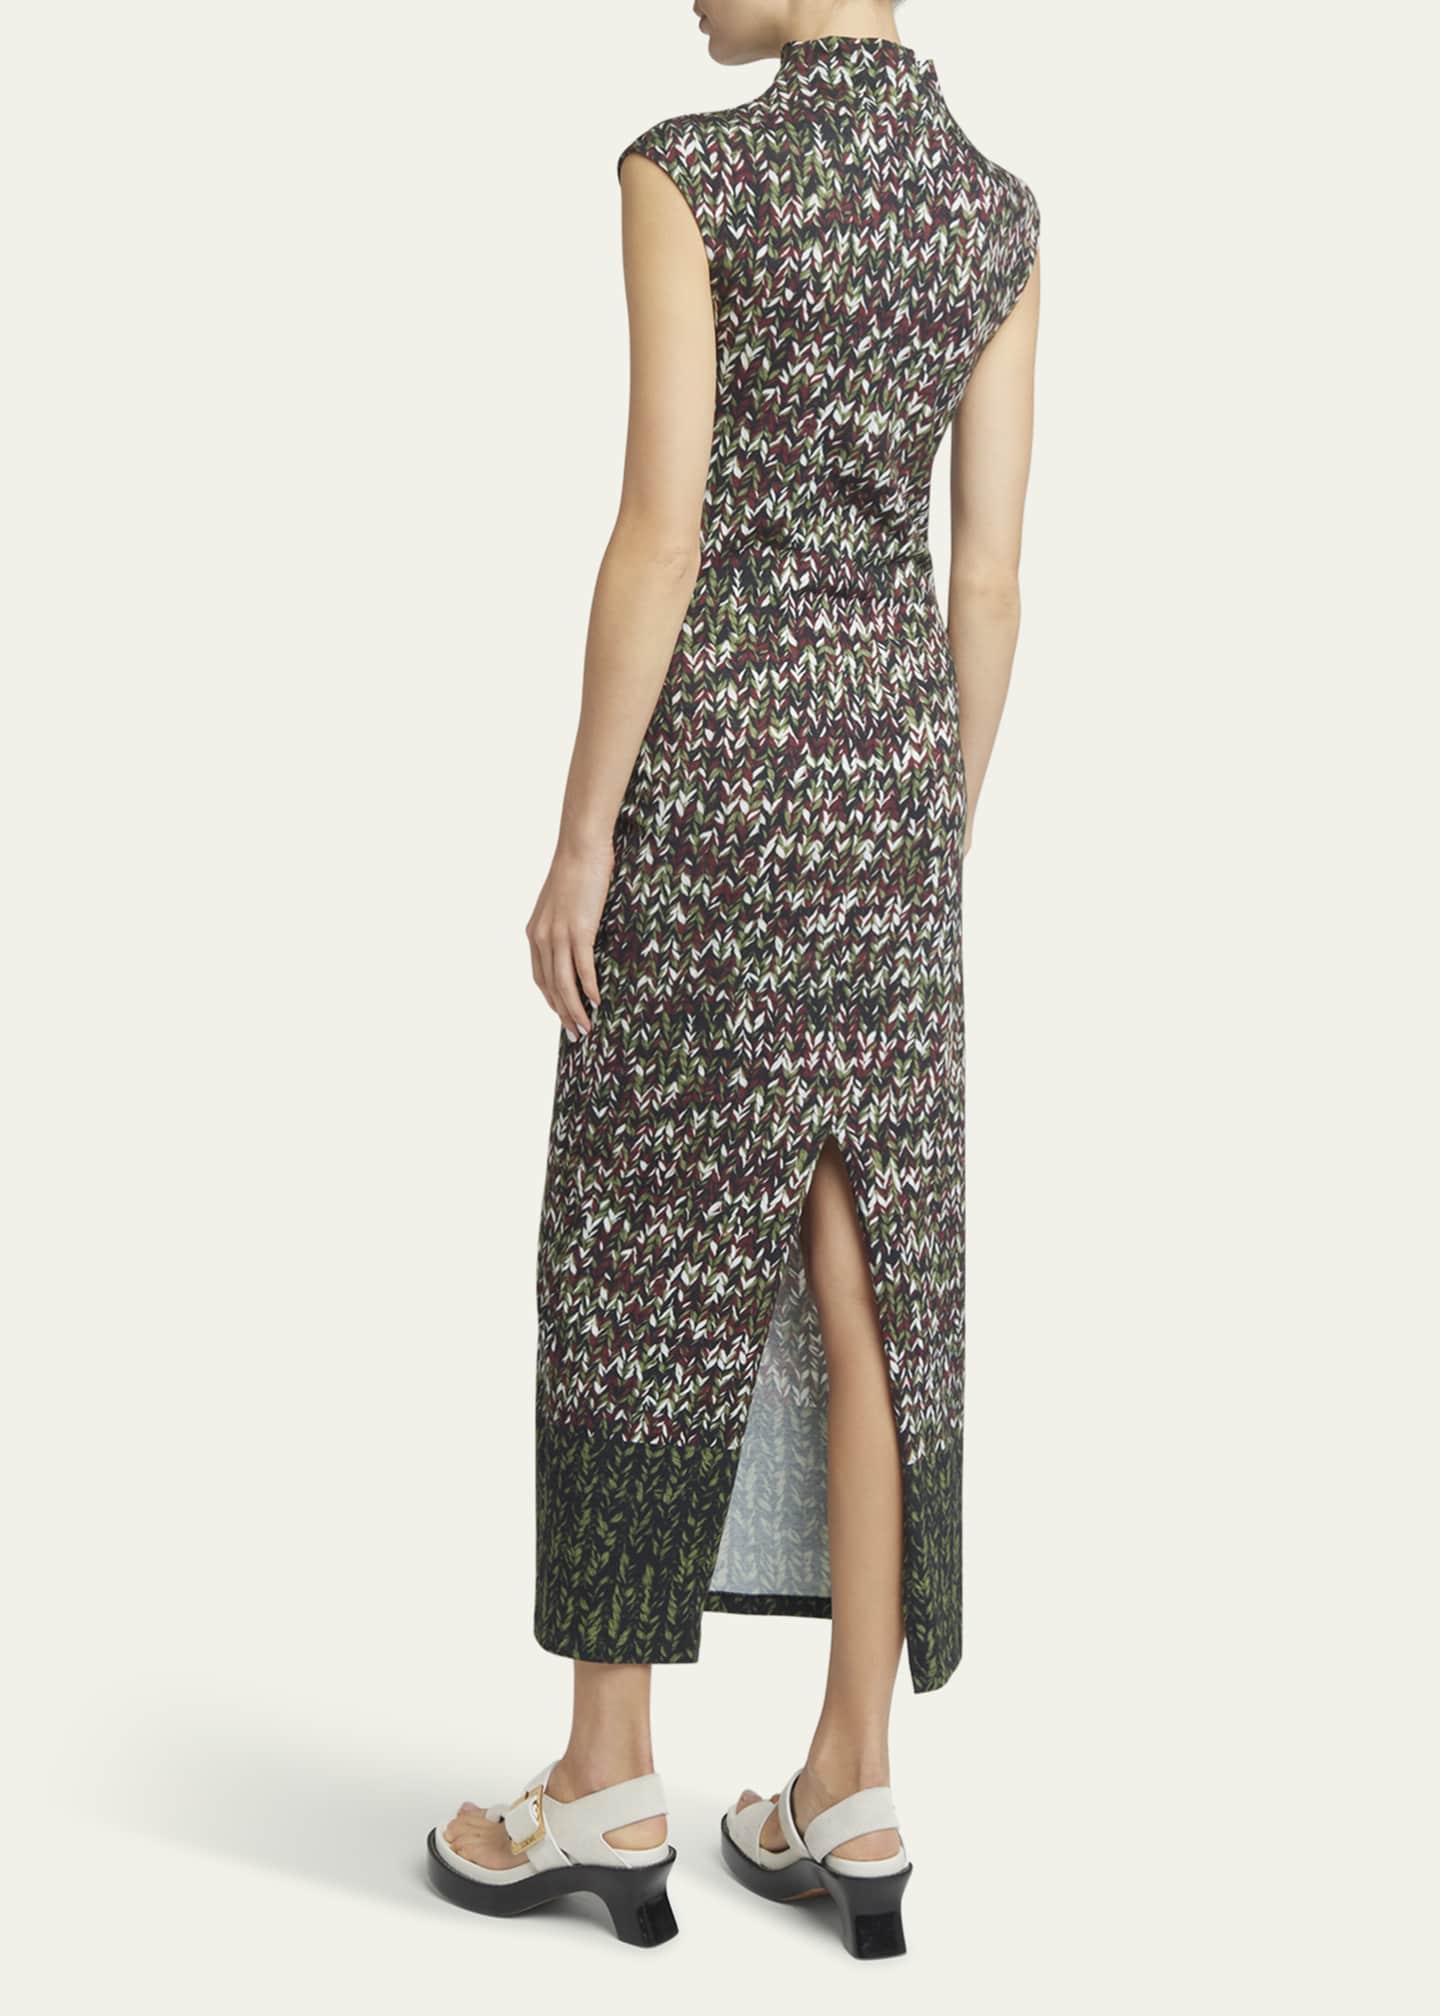 Loewe Yarn-Print Jersey Mock-Neck Column Dress - Bergdorf Goodman